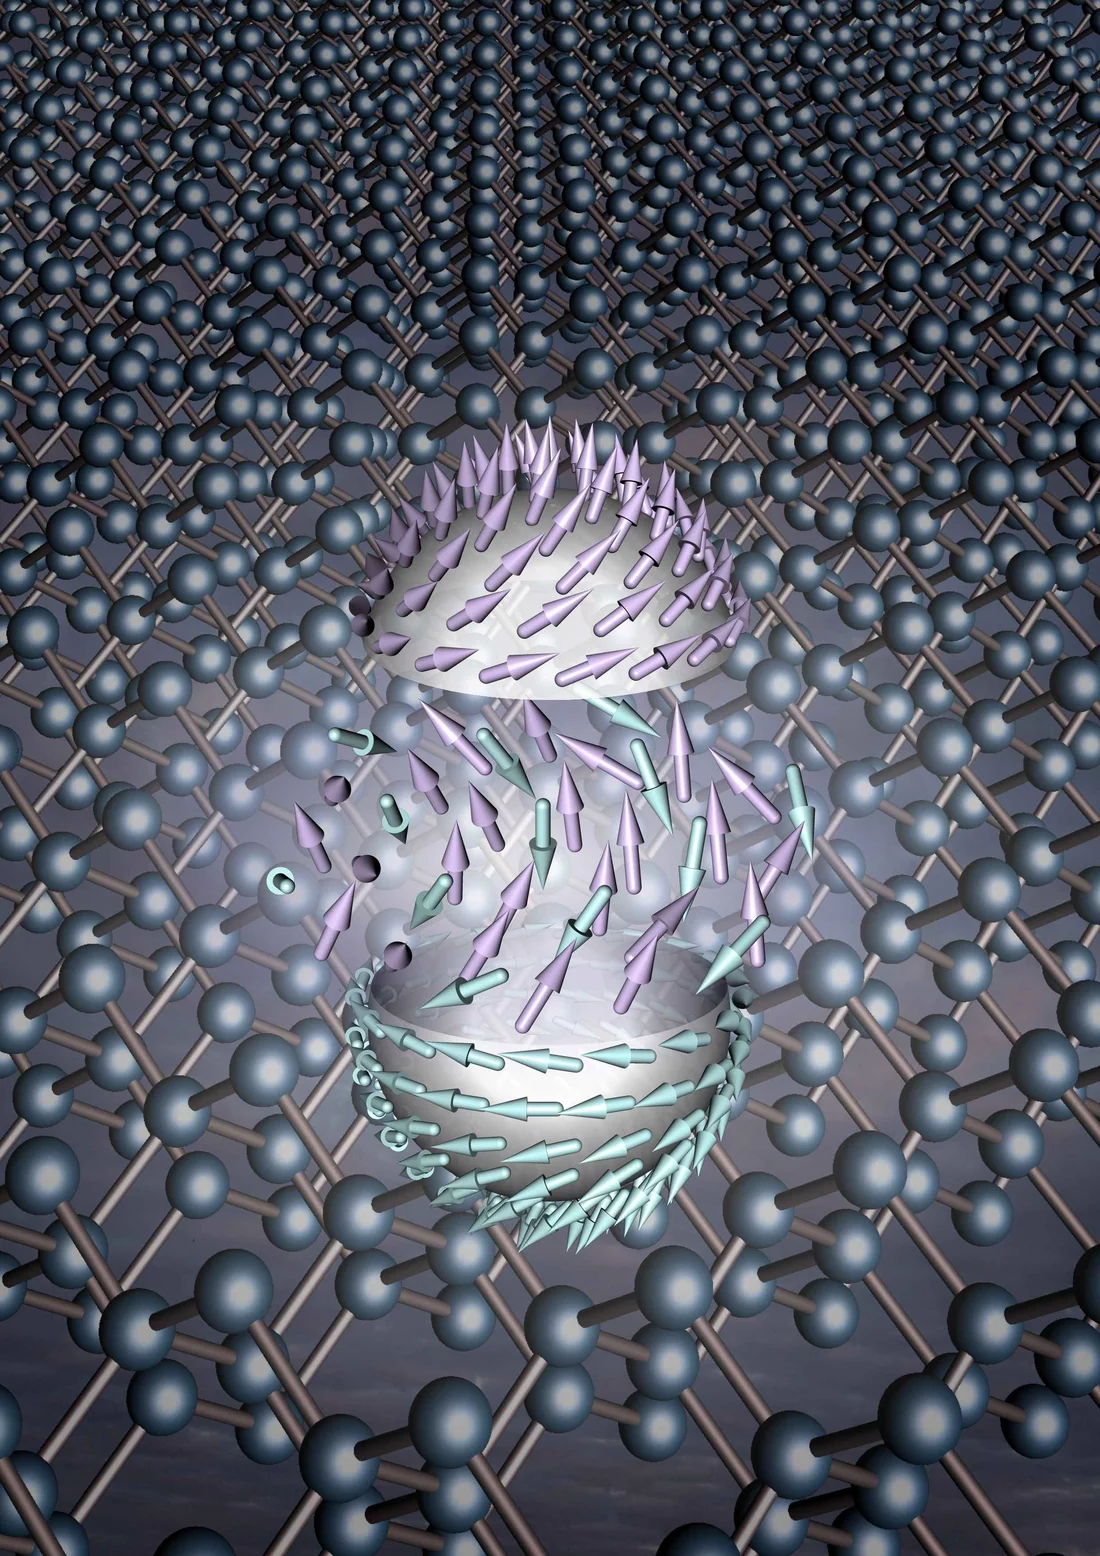 Les skyrmions sont des nanostructures